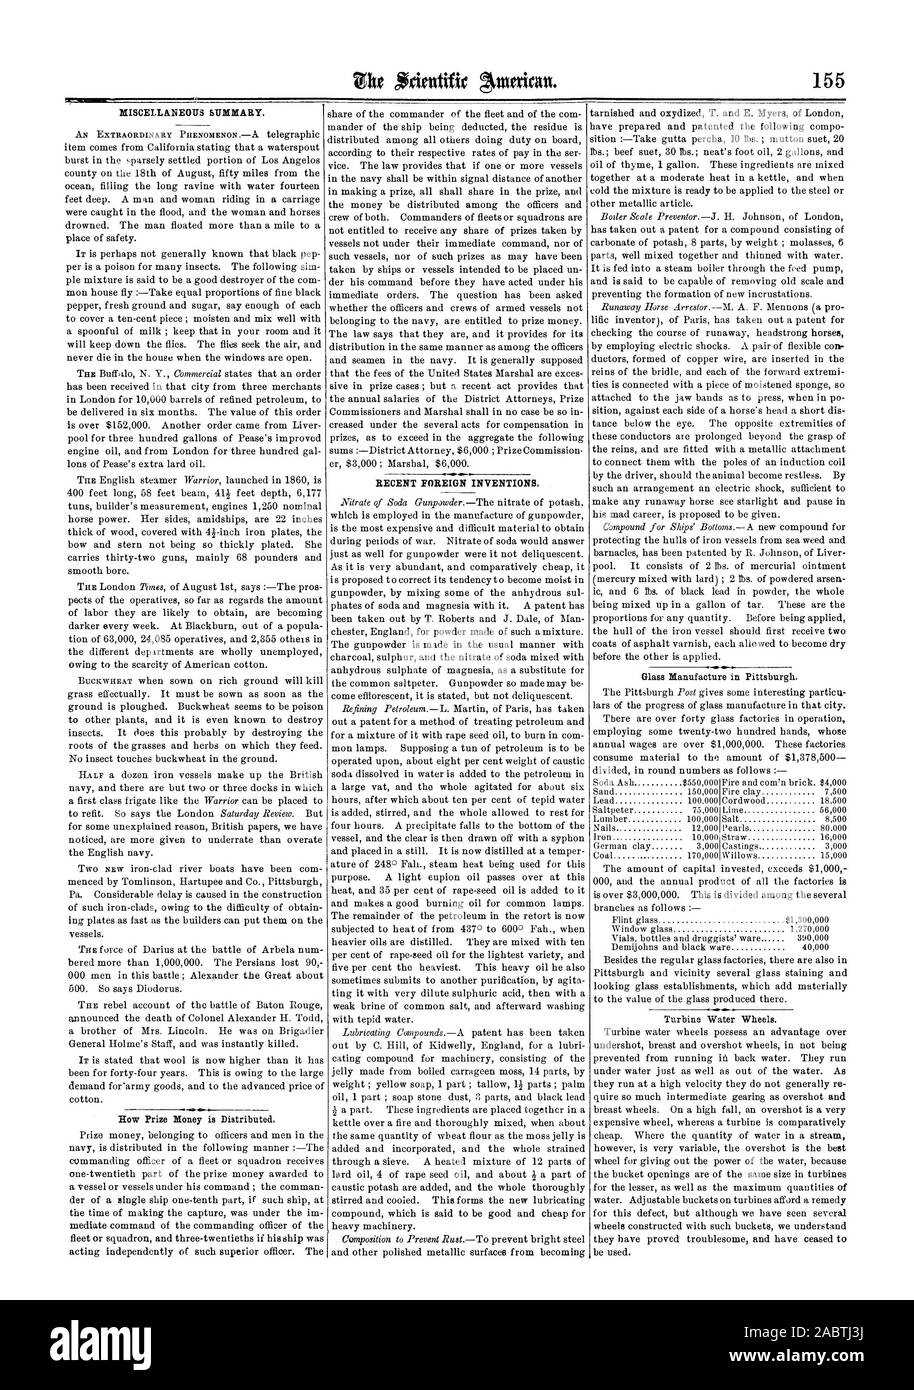 Riepilogo varie. Recenti invenzioni straniere., Scientific American, 1862-09-06 Foto Stock